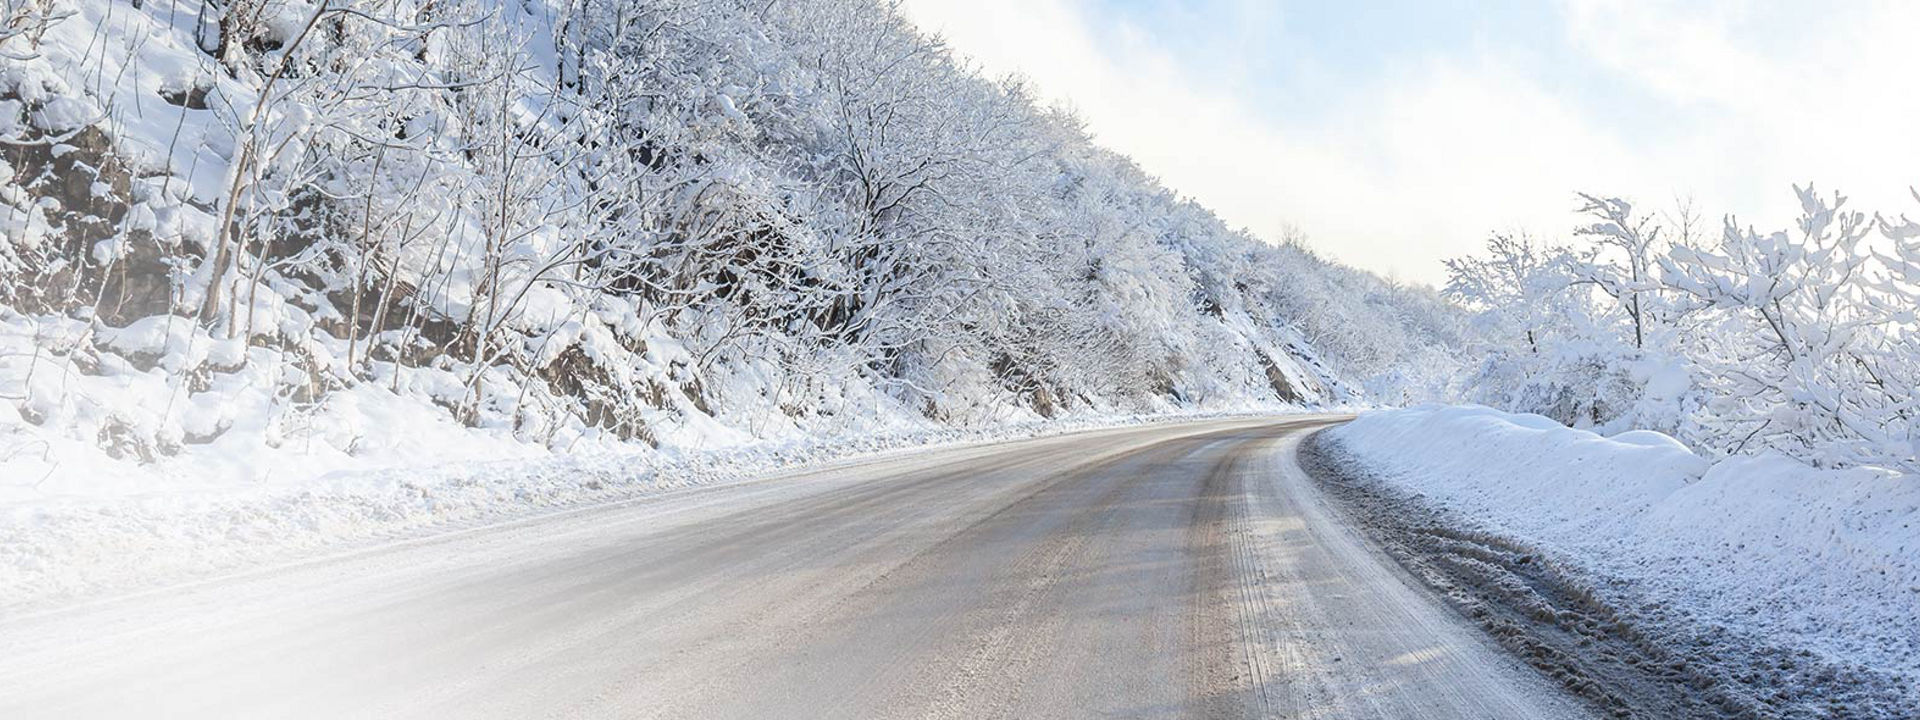 Esta imagen muestra una carretera de invierno cubierta de nieve con huellas de neumáticos de camión de invierno Bridgestone.